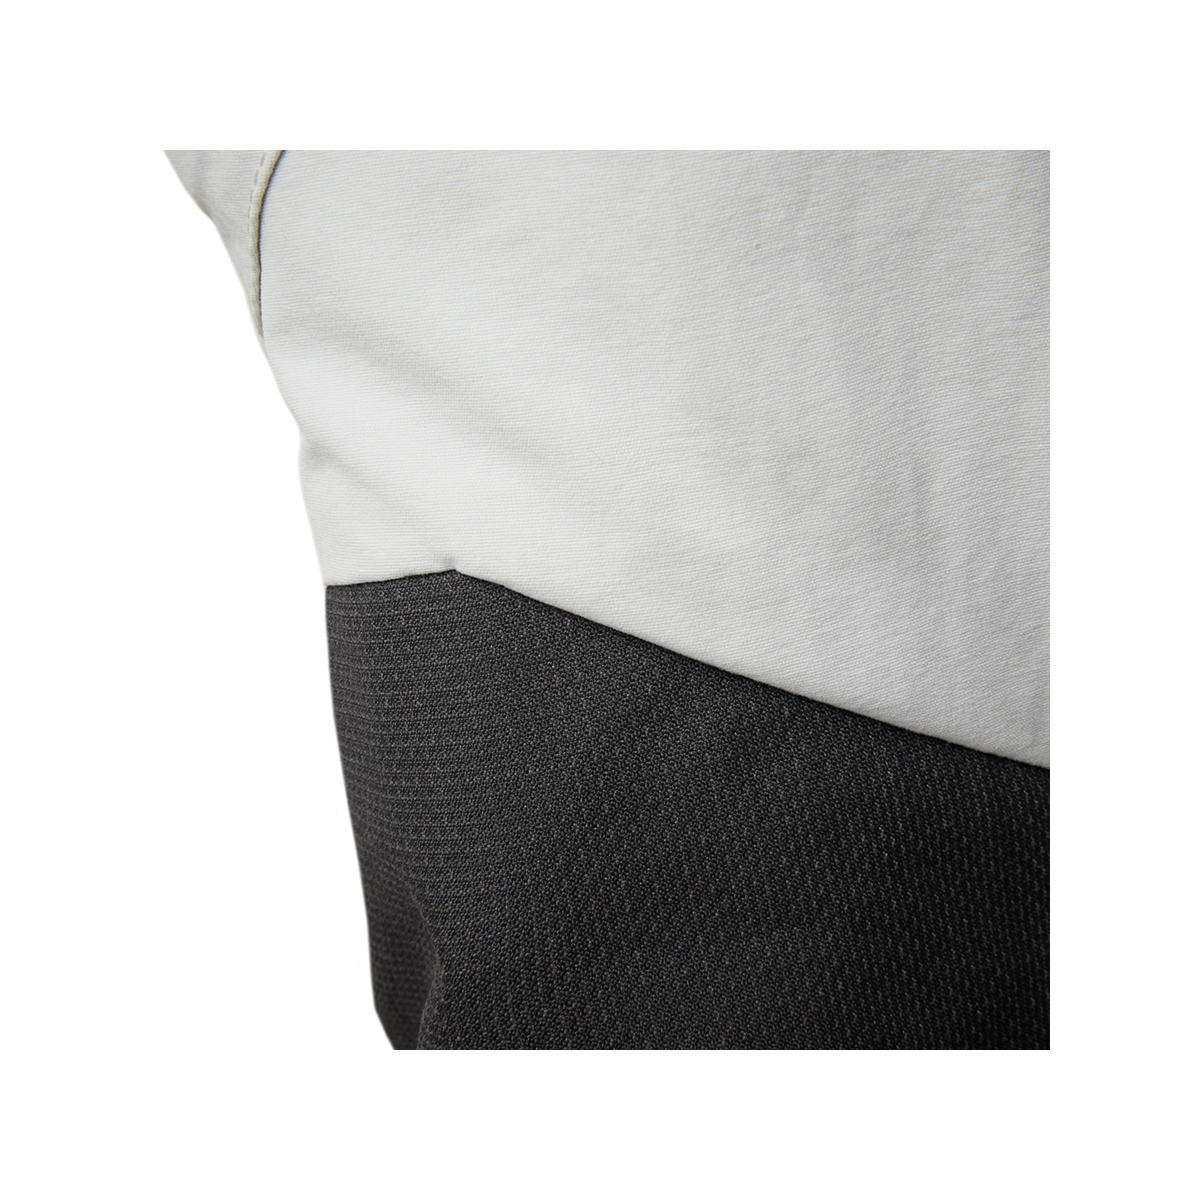 Musto Evolution Performance pantalon de voile 2.0 homme gris clair, taille 32